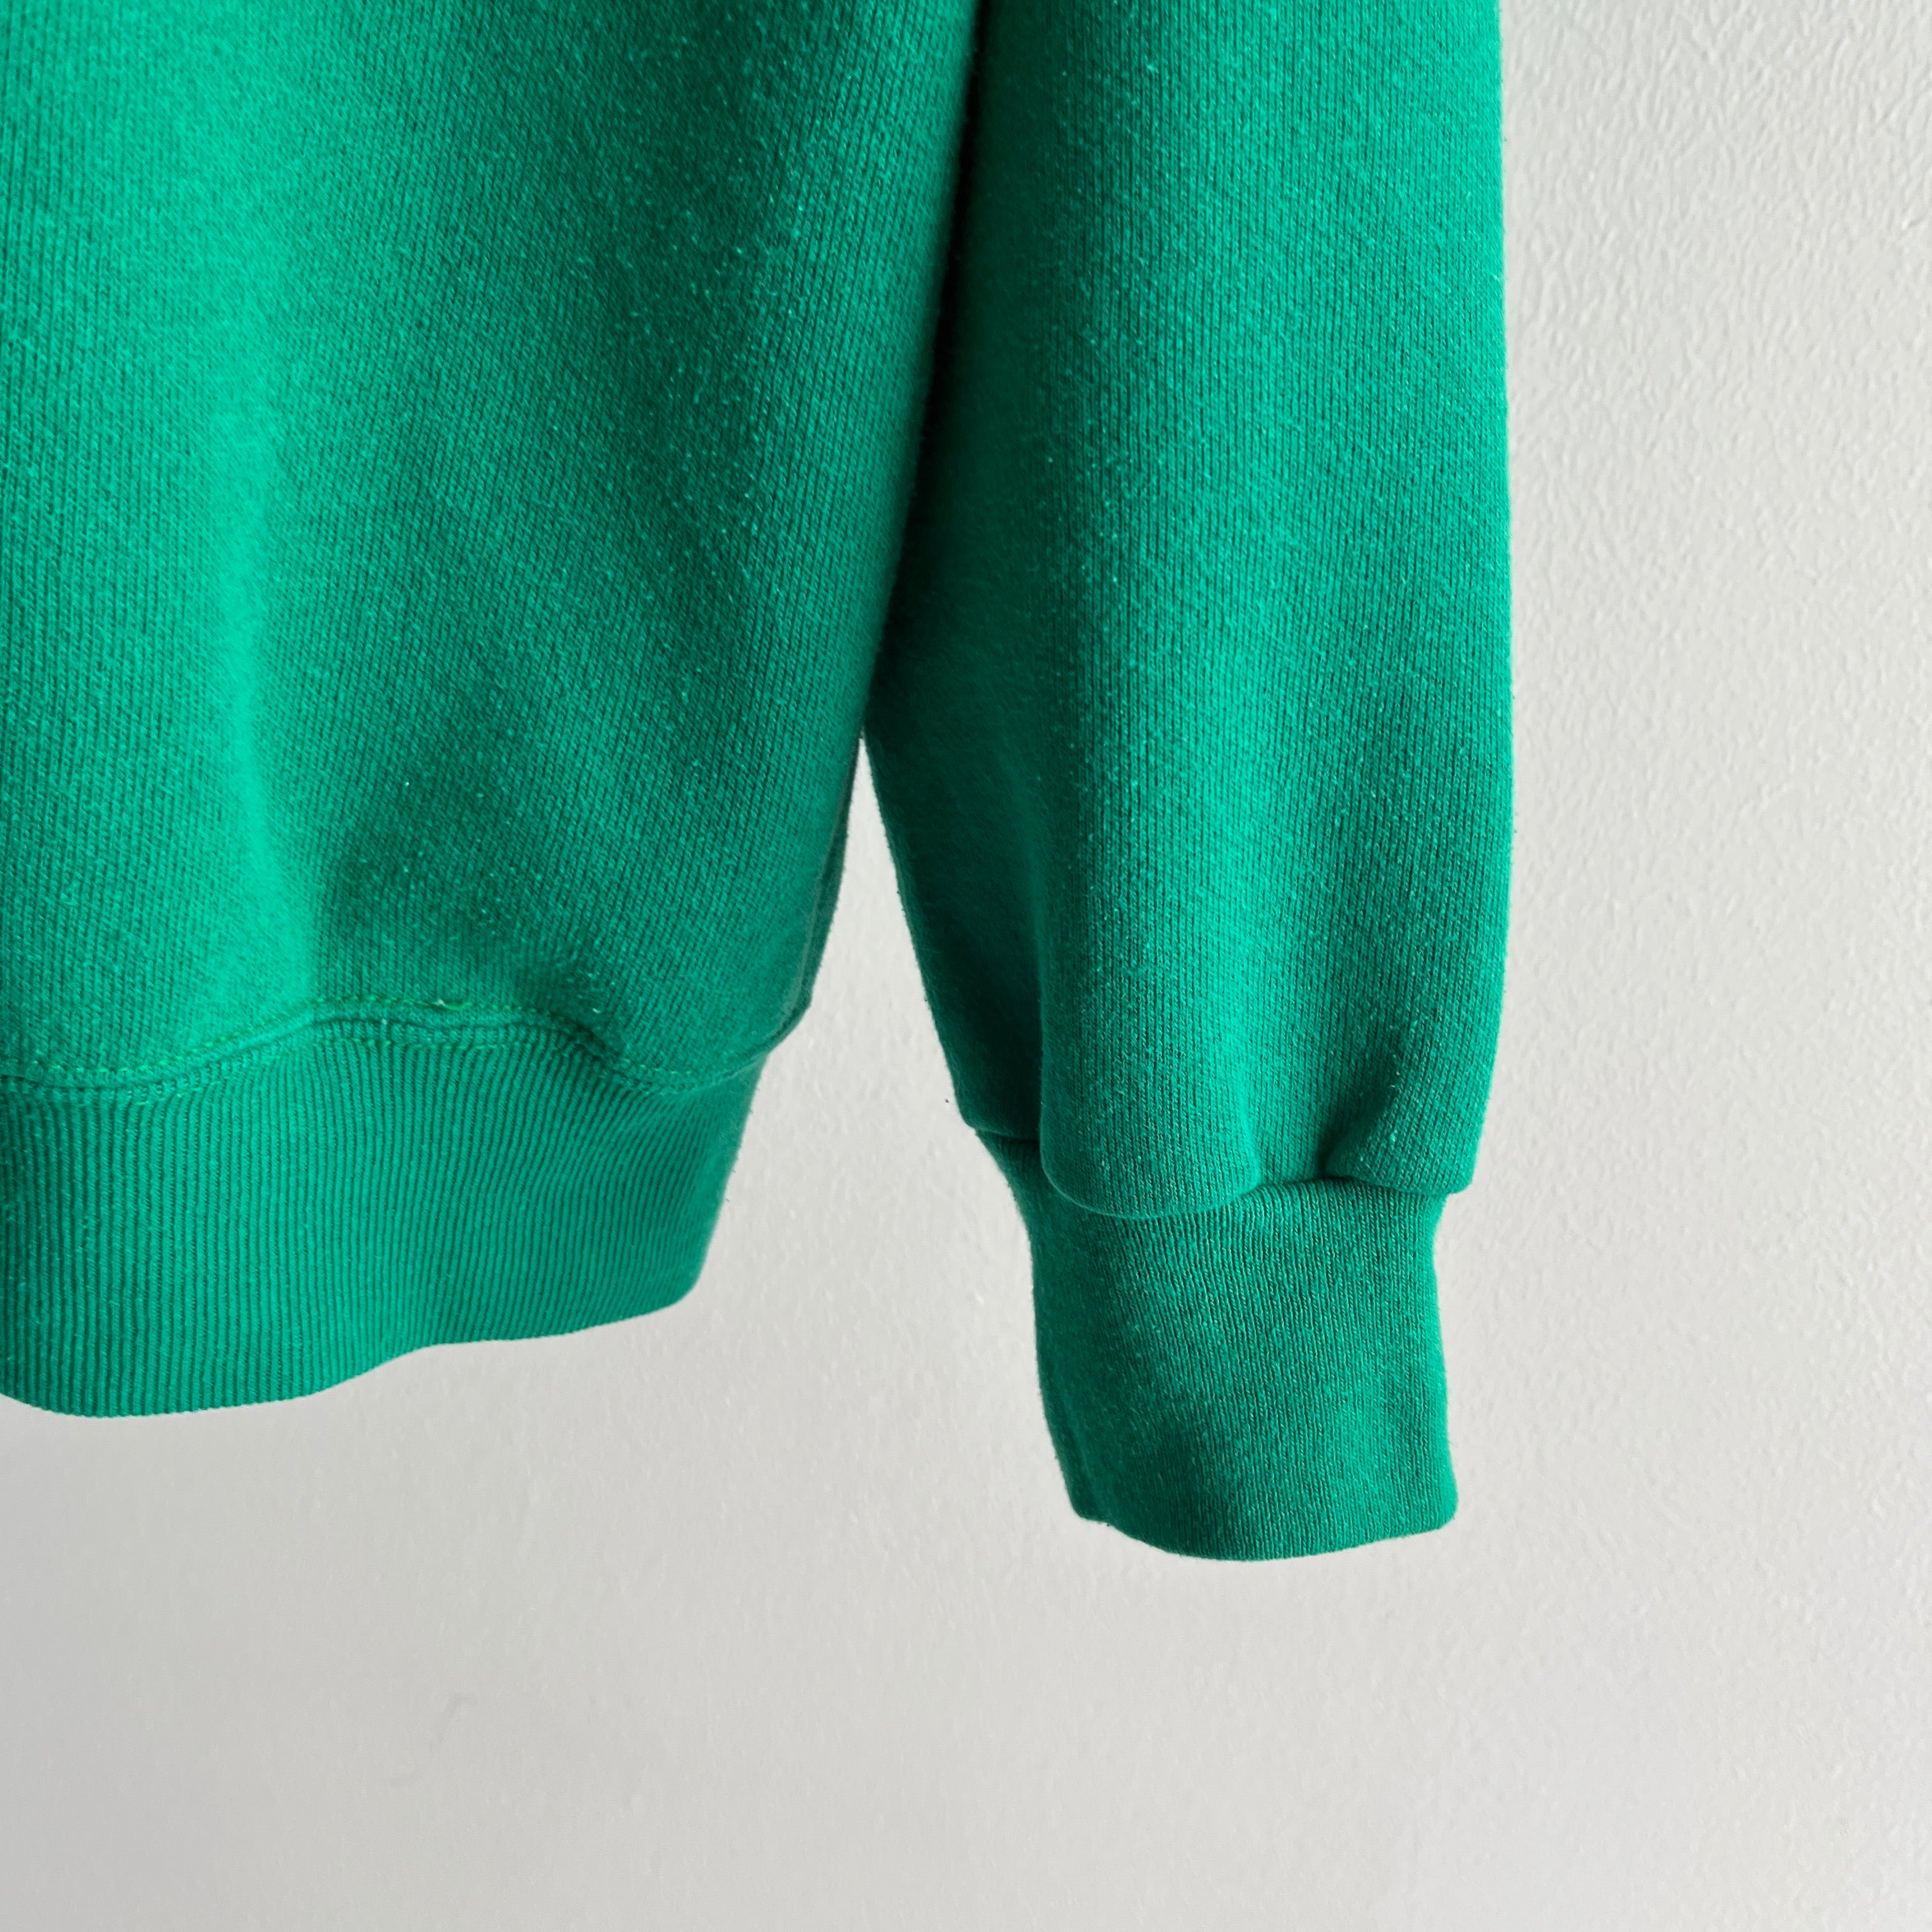 1990s Tultex Blank Green Raglan Sweatshirt